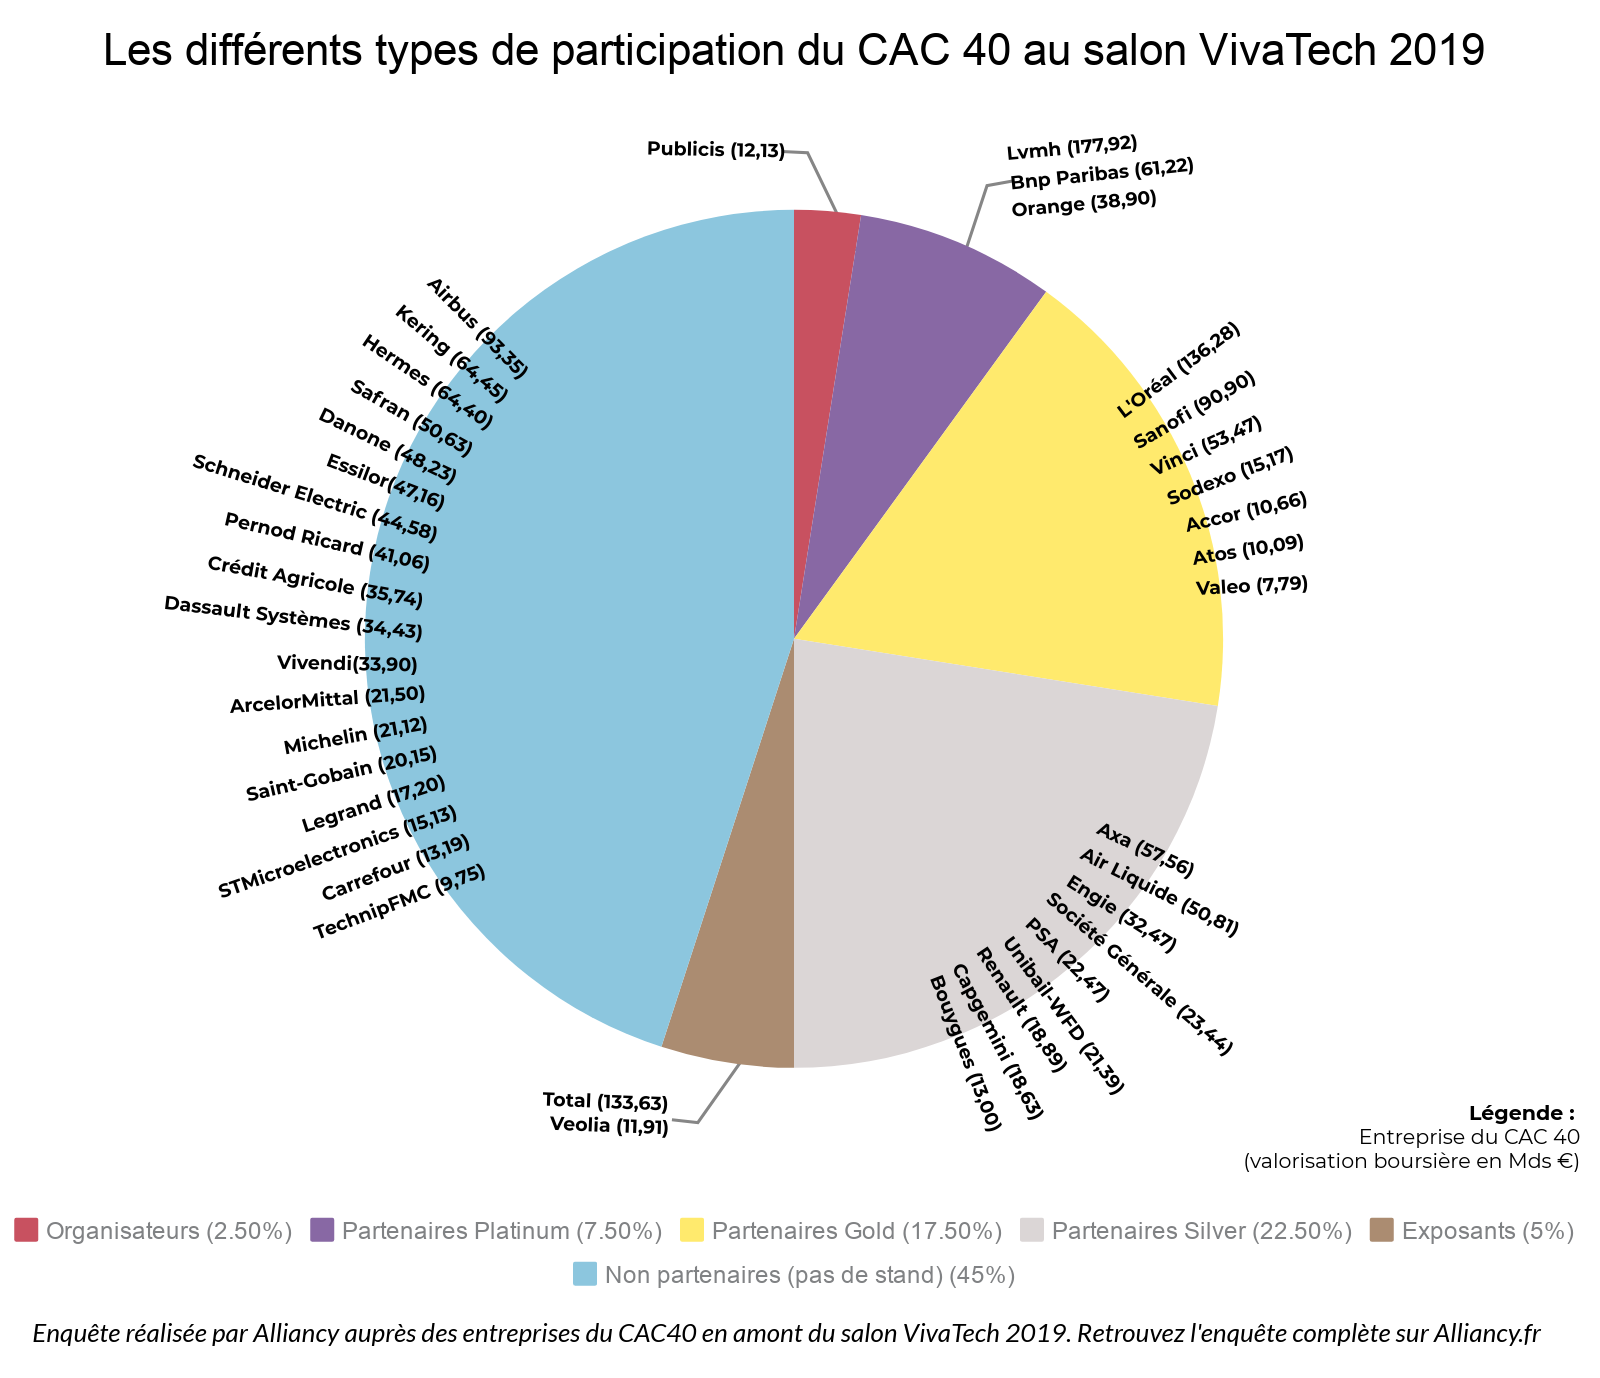 Les différents types de participation du CAC 40 au salon VivaTech 2019